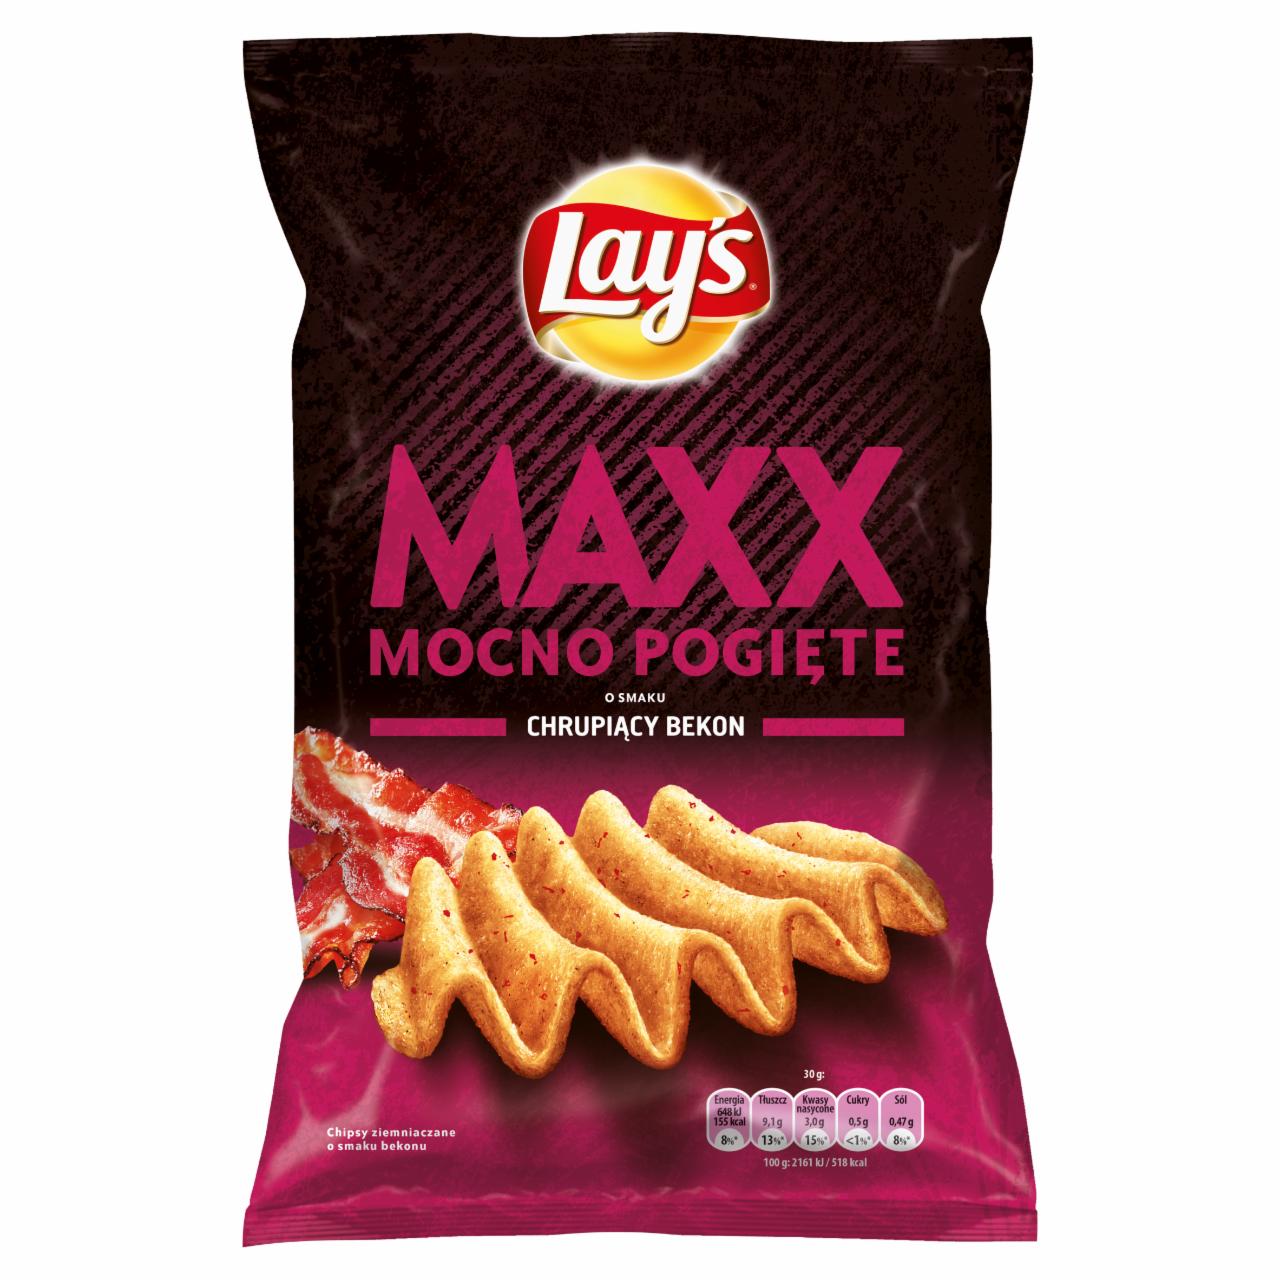 Zdjęcia - Lay's Maxx Mocno Pogięte o smaku chrupiący bekon Chipsy ziemniaczane 140 g